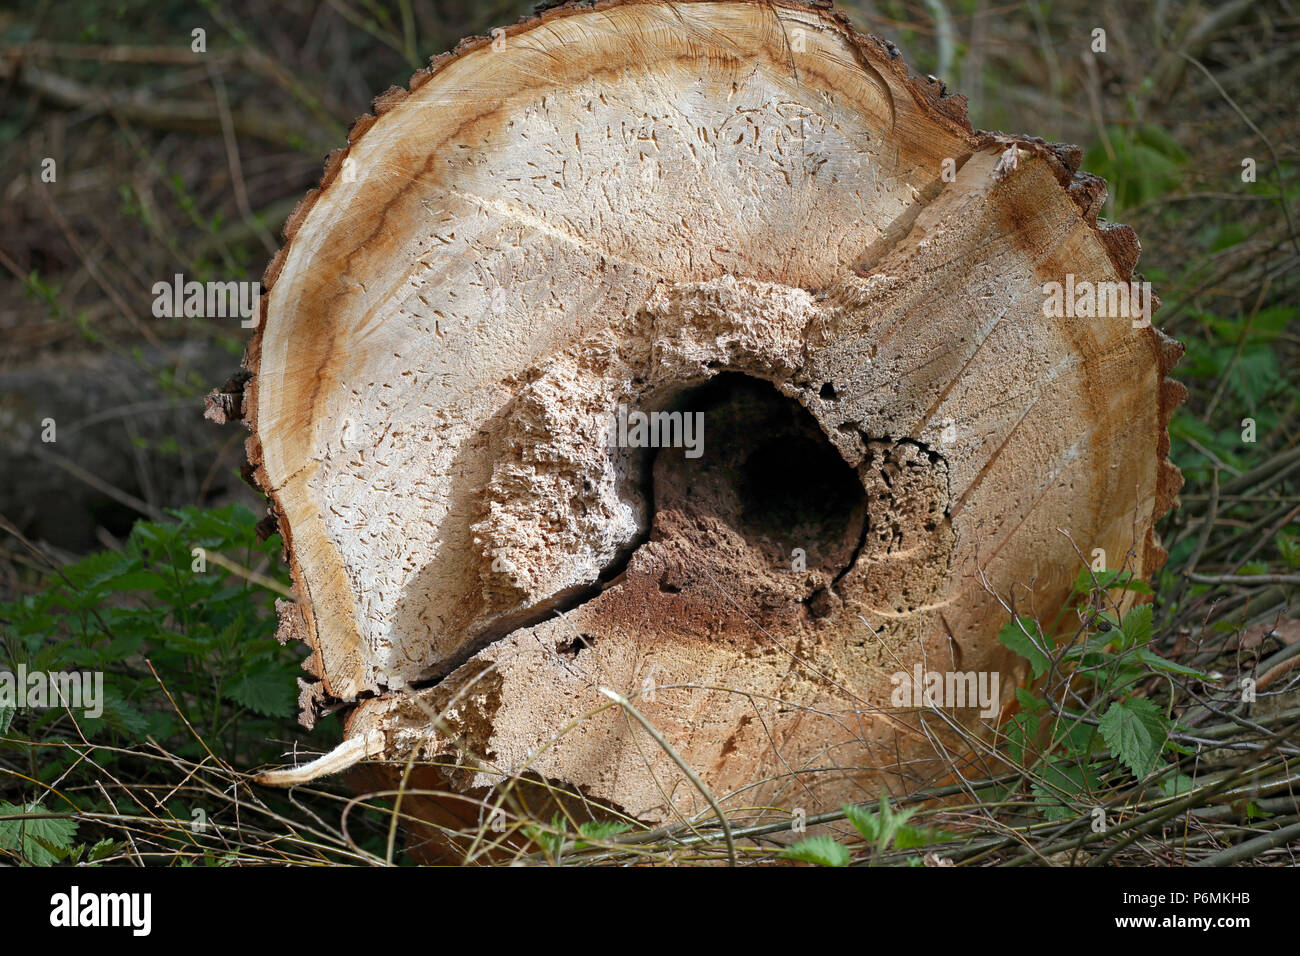 Berlin, Allemagne - tronc de l'arbre avec l'infestation woodworm Golf Polo Banque D'Images